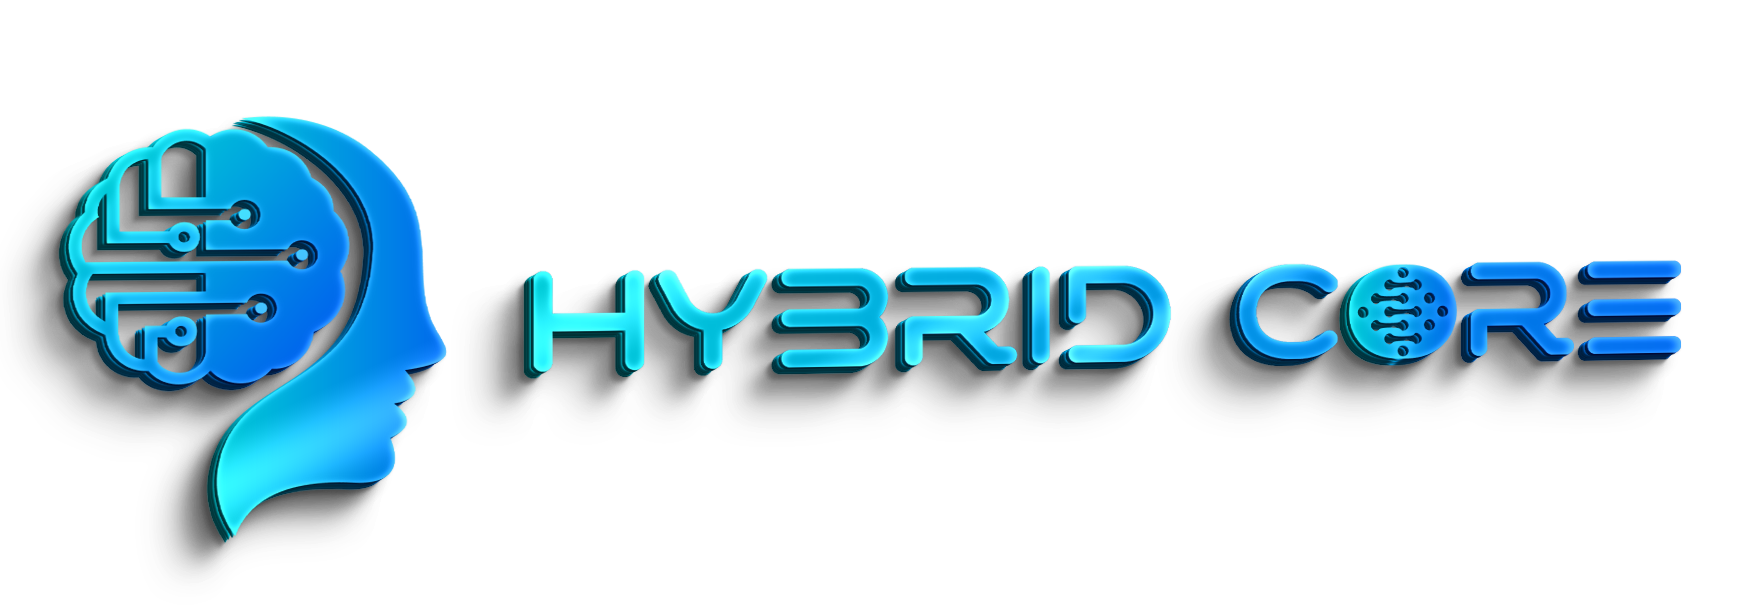 HYBIRD CORE logo 3D